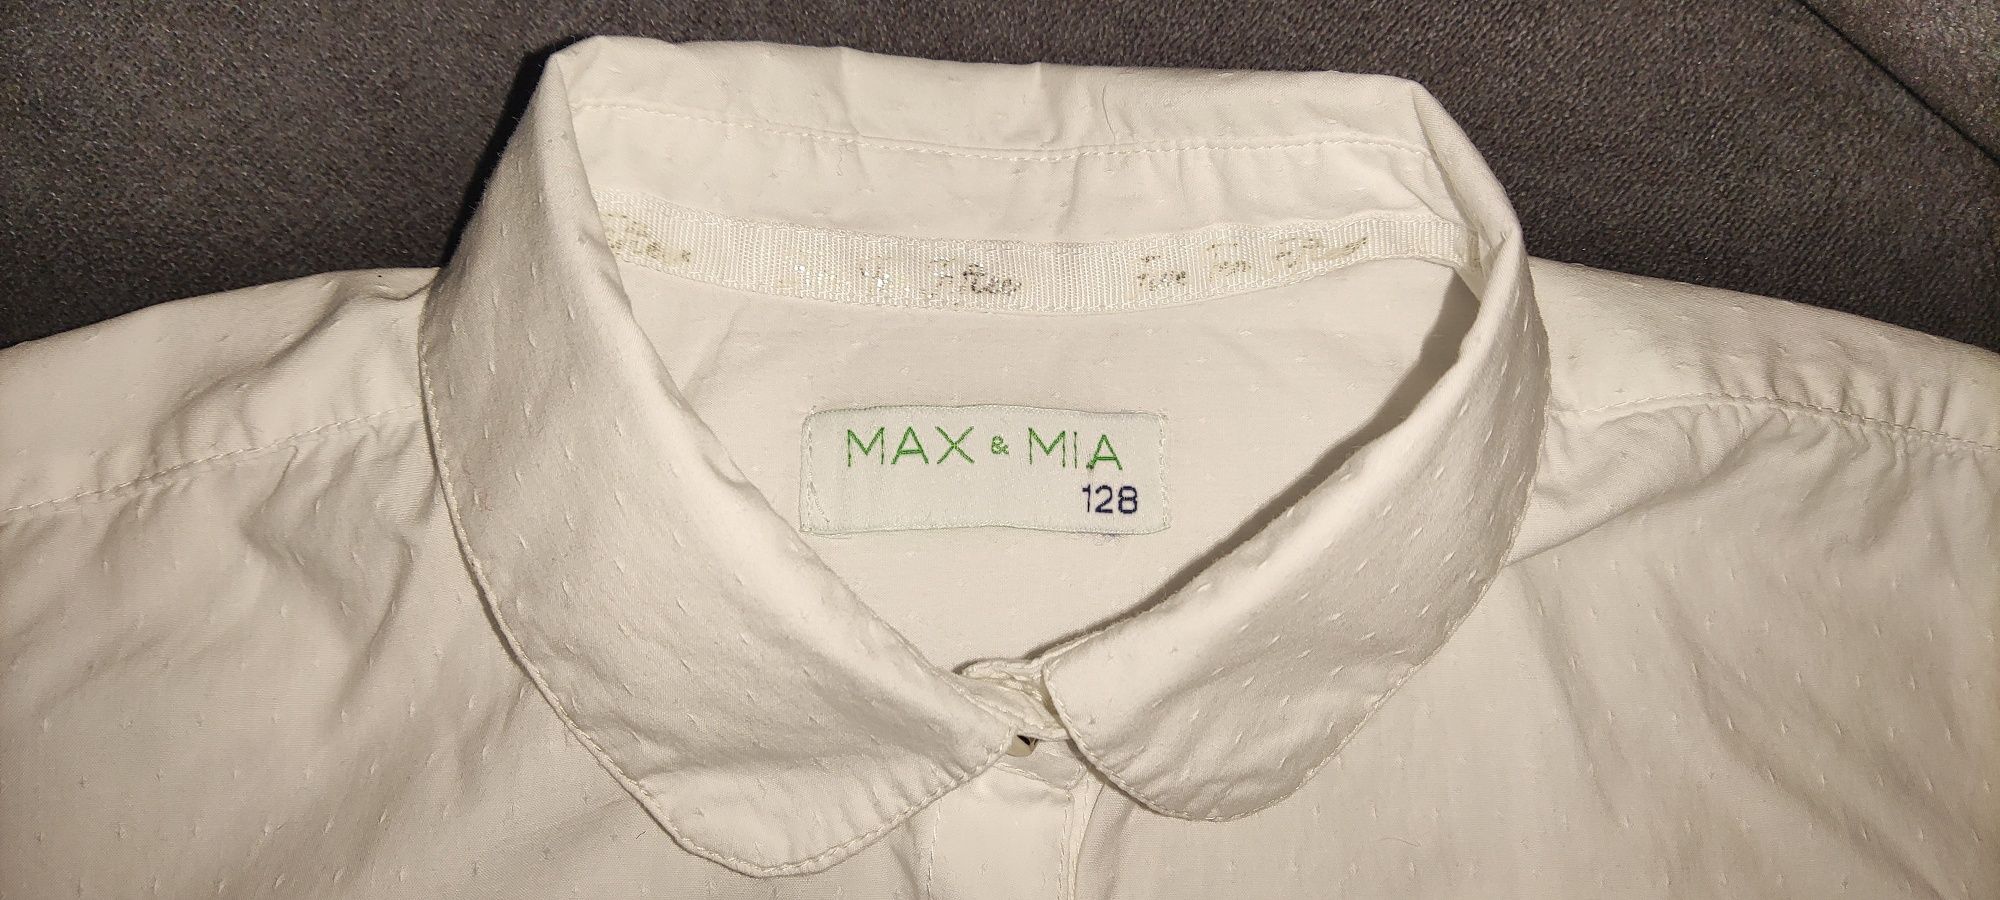 Biała bluzka, wizytowa r.128 Max&Mia

1. Co